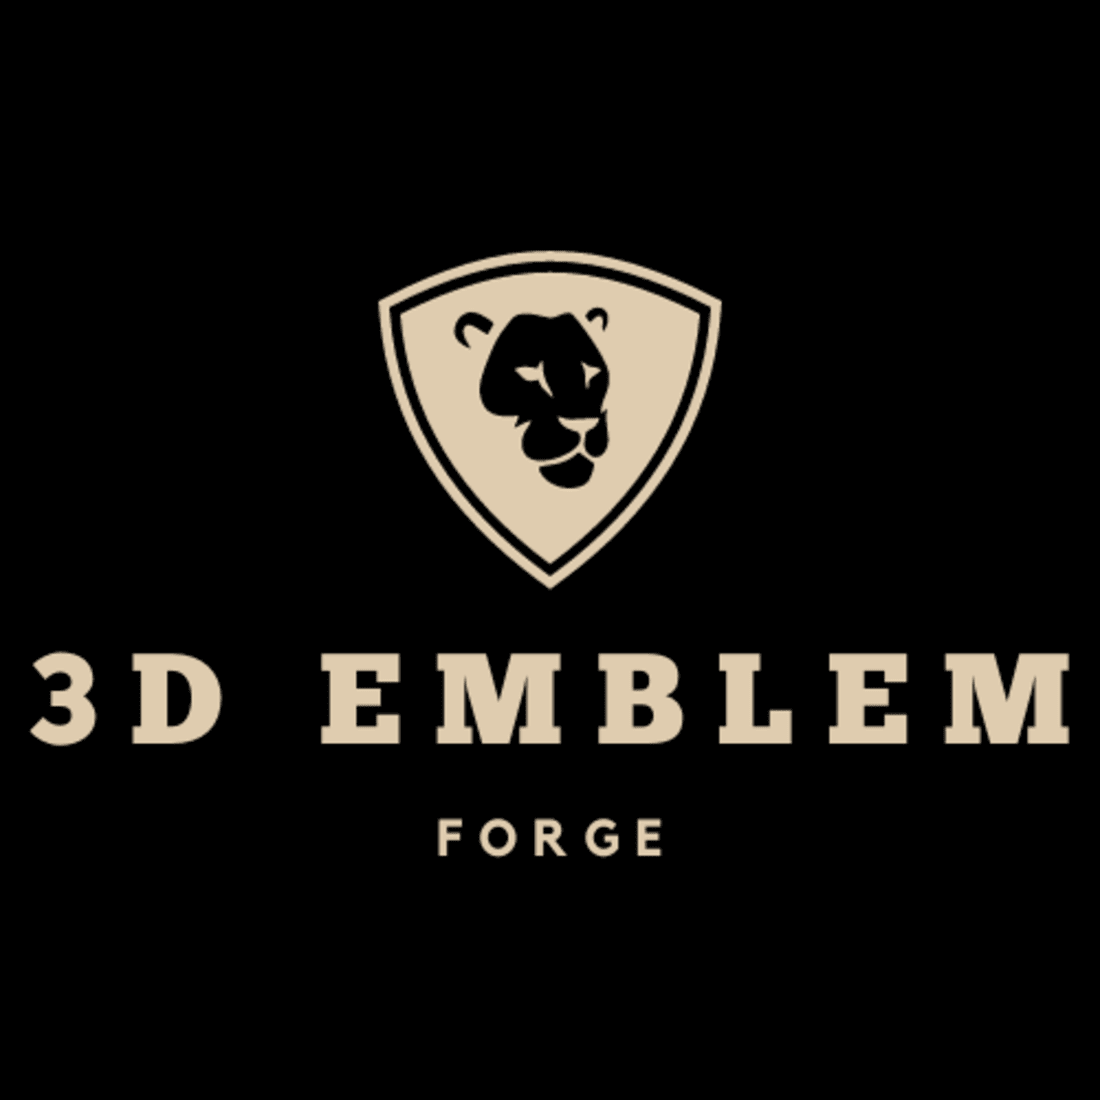 3D EMBLEM FORGE LOGO DESIGN preview image.